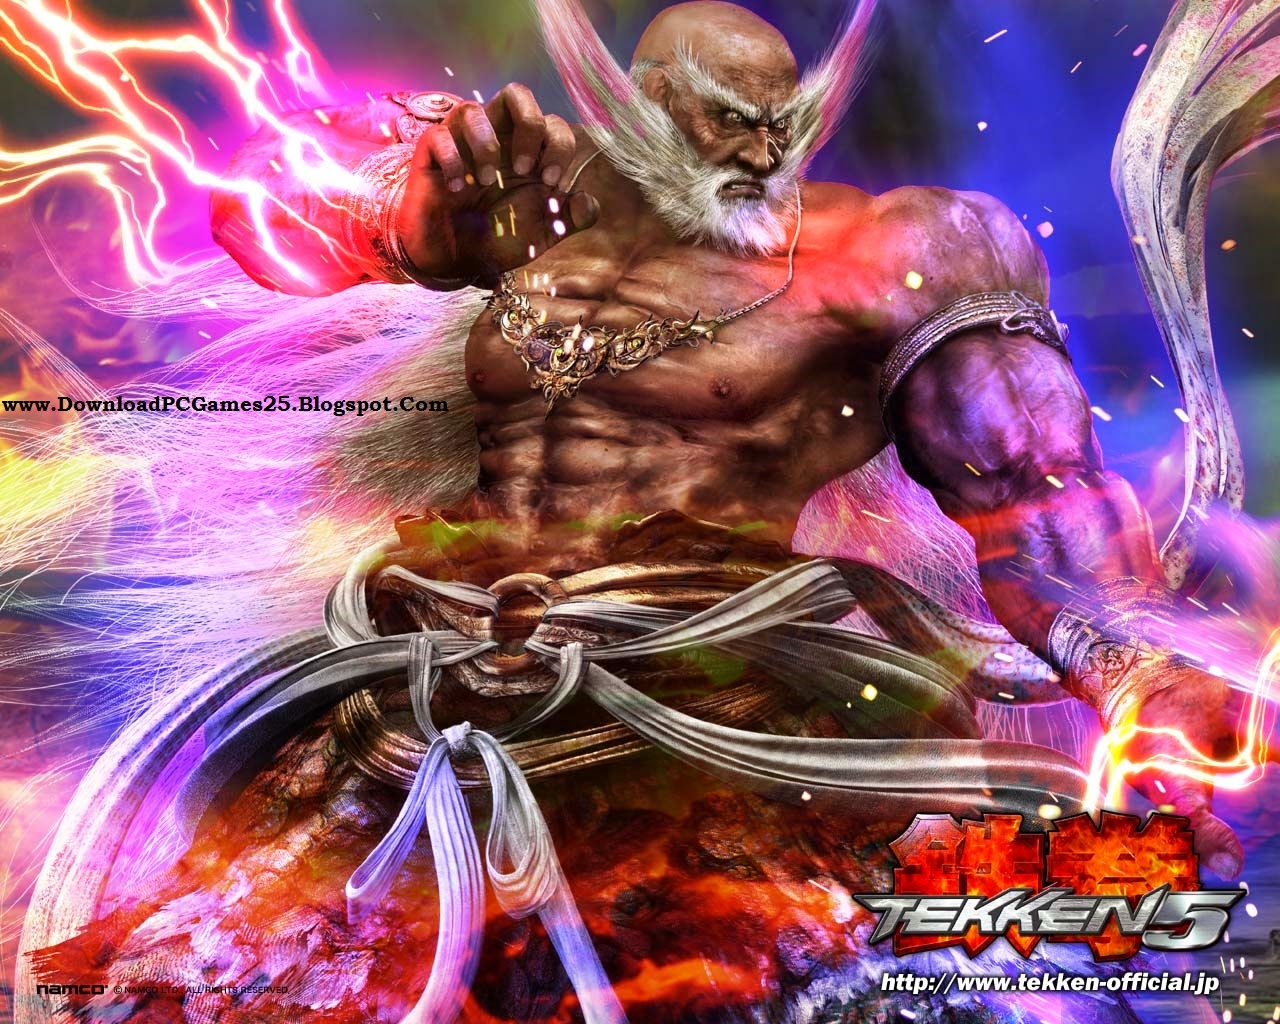 Tekken 5 PC Wallpapers